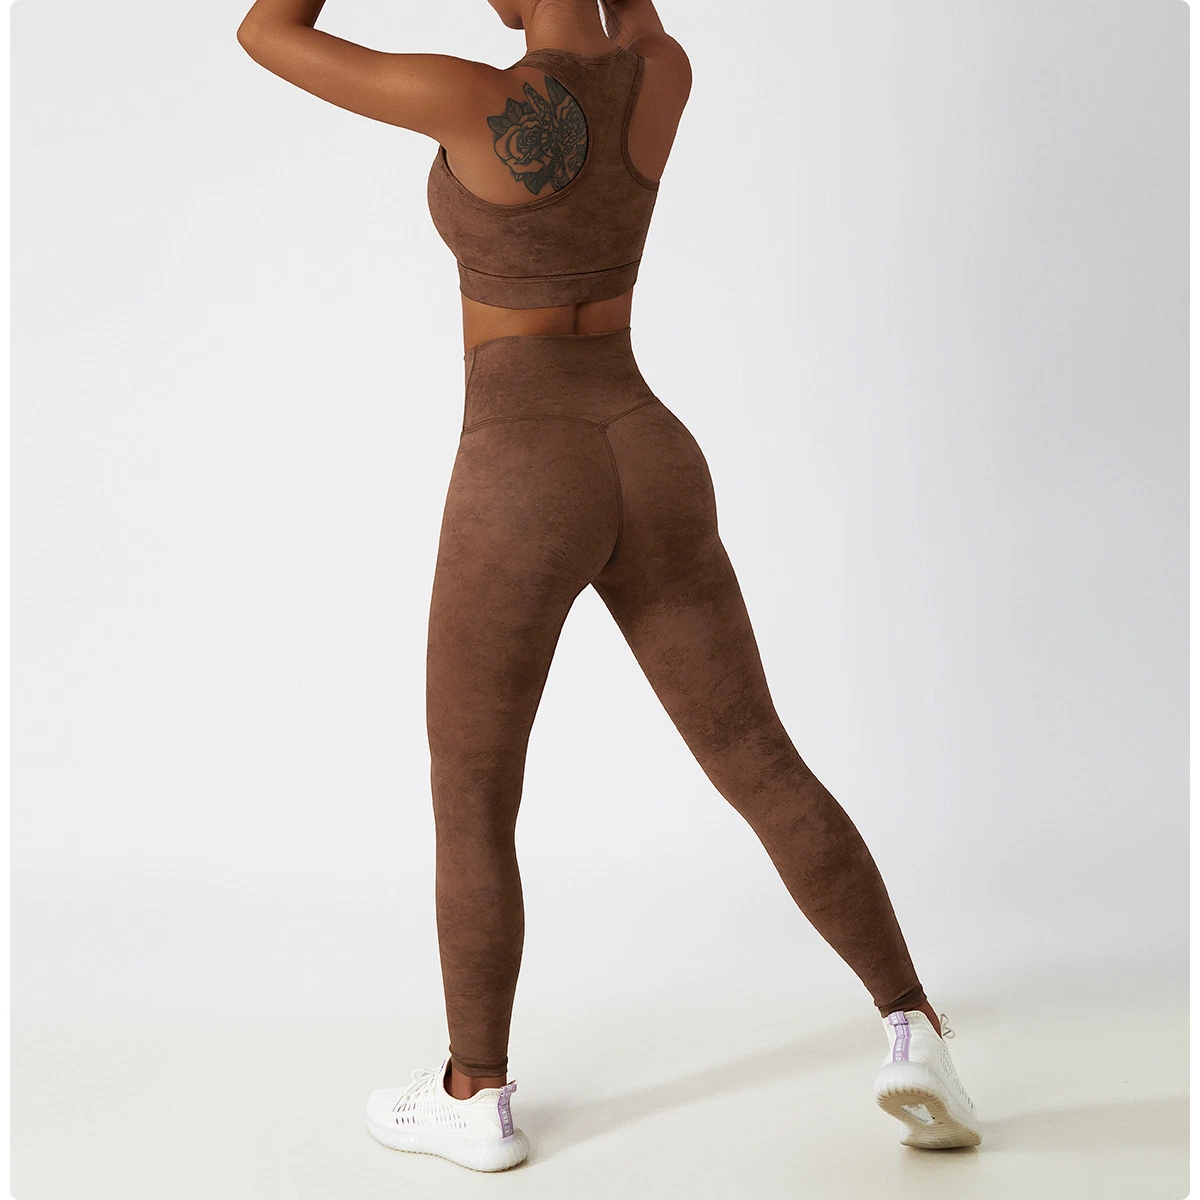 La mujer pantalones de yoga gimnasio elaborar prendas de vestir Push up Leggings elásticos de cintura alta Pantalones Femeninos TIE DYE Leggings establece las prendas de vestir